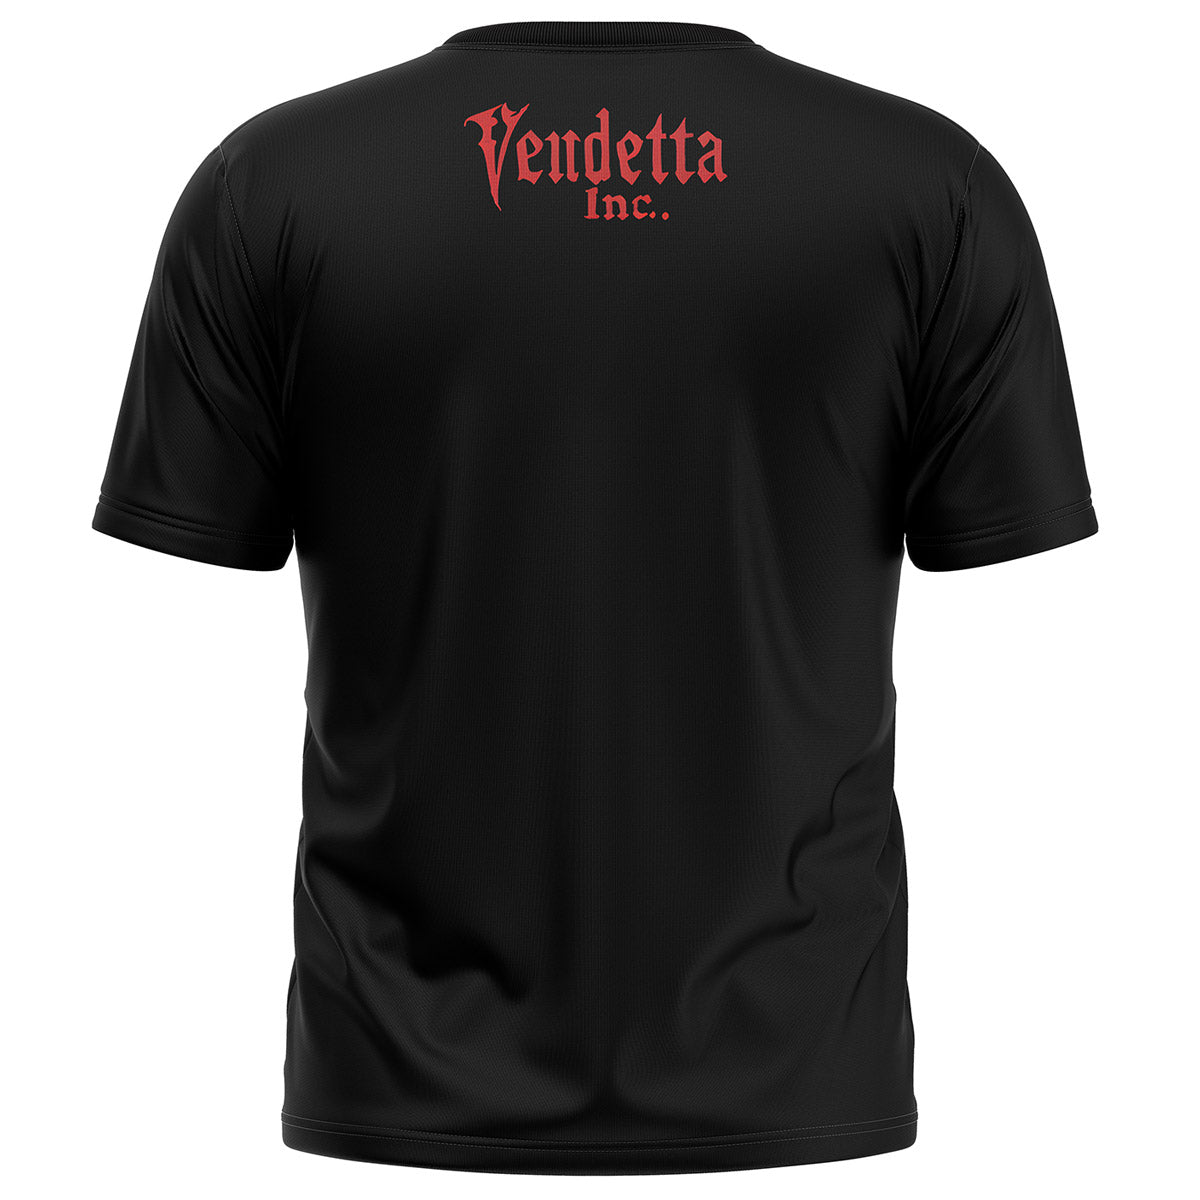 Vendetta Inc. Shirt Respect Honor schwarz